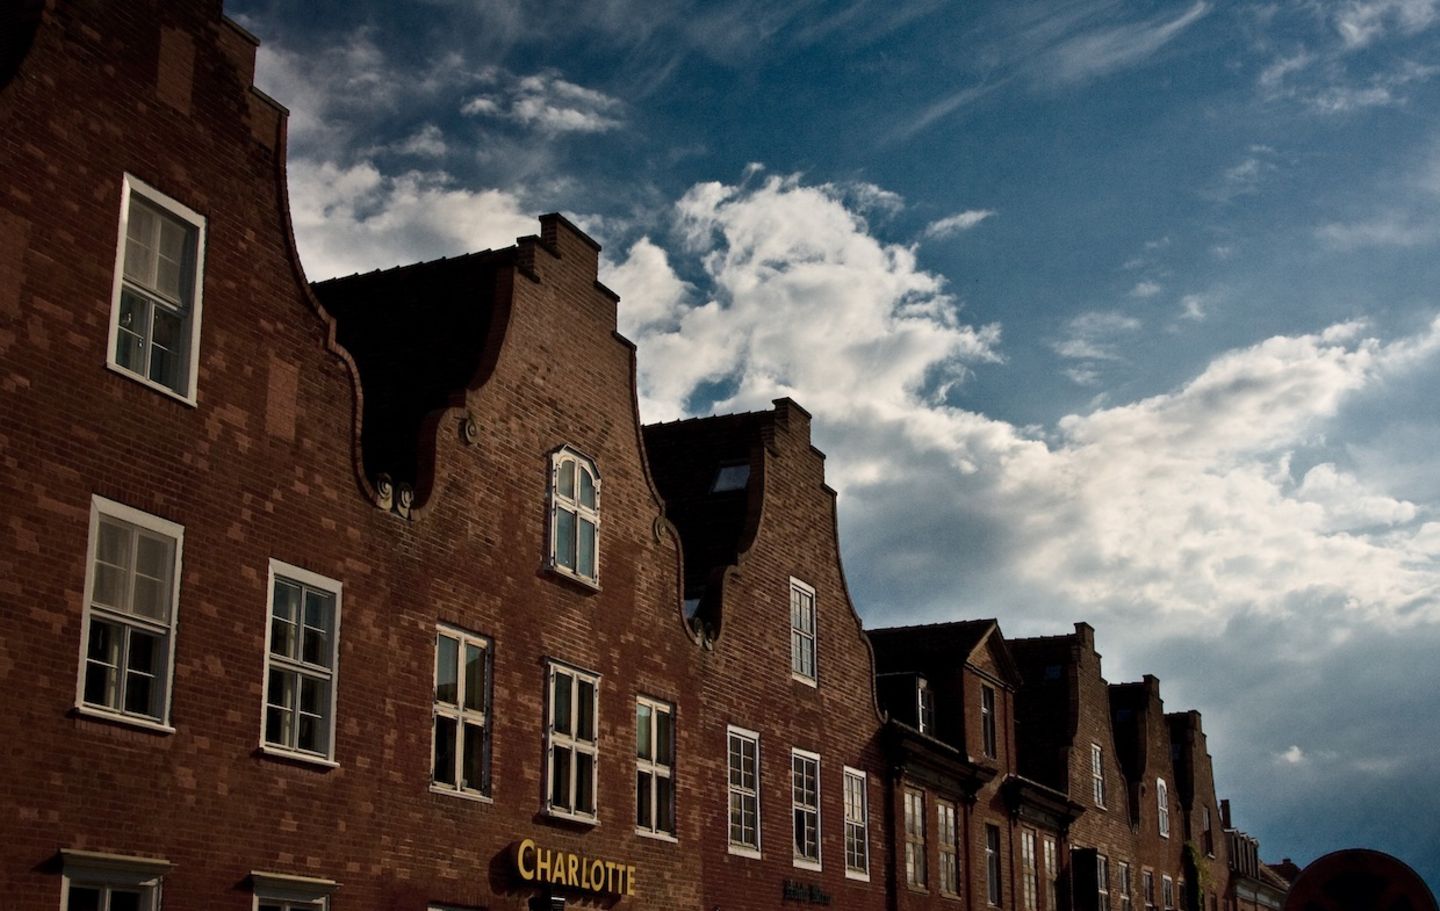 Holländisches Viertel in Potsdam: Die Stadt wächst und wird teurer